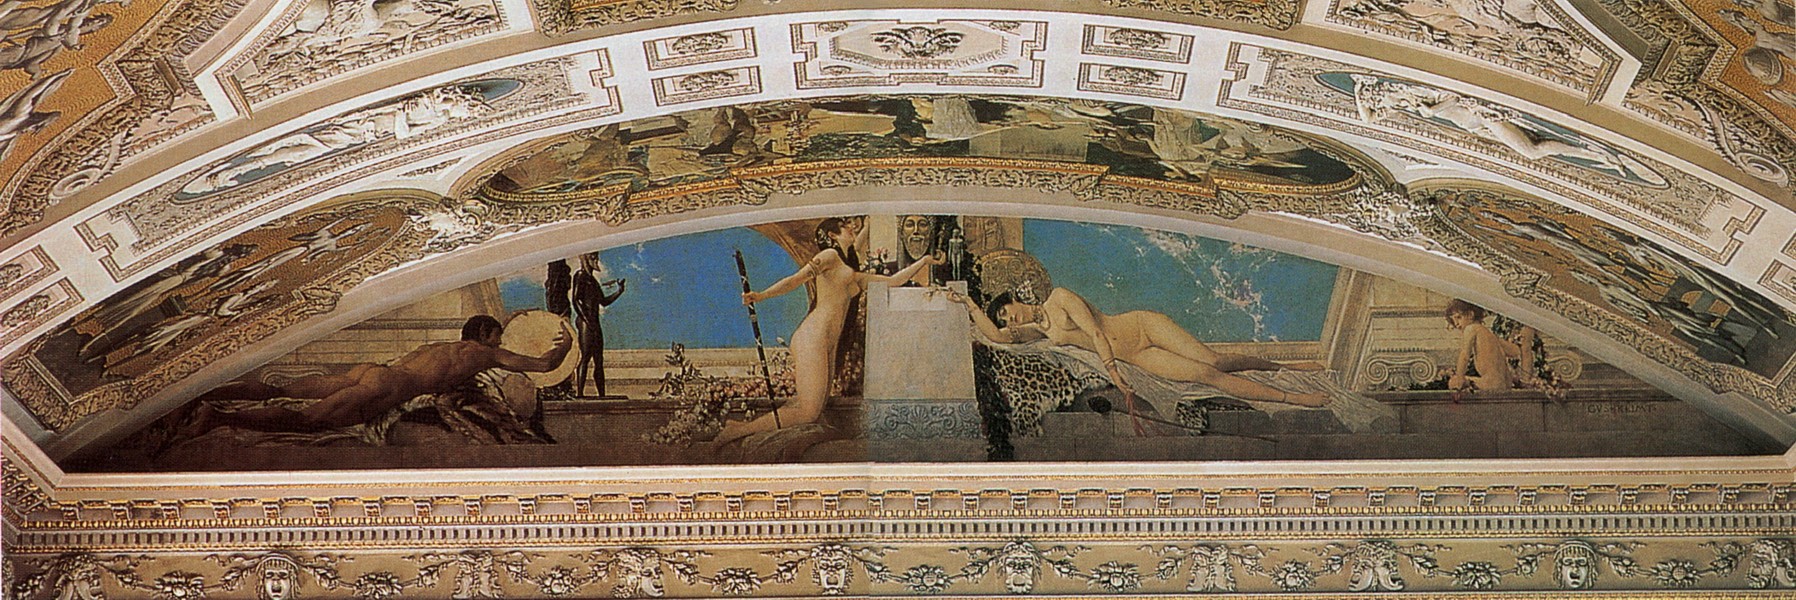 维也纳布尔克剧院天井画《戴奥尼索斯的祭坛》